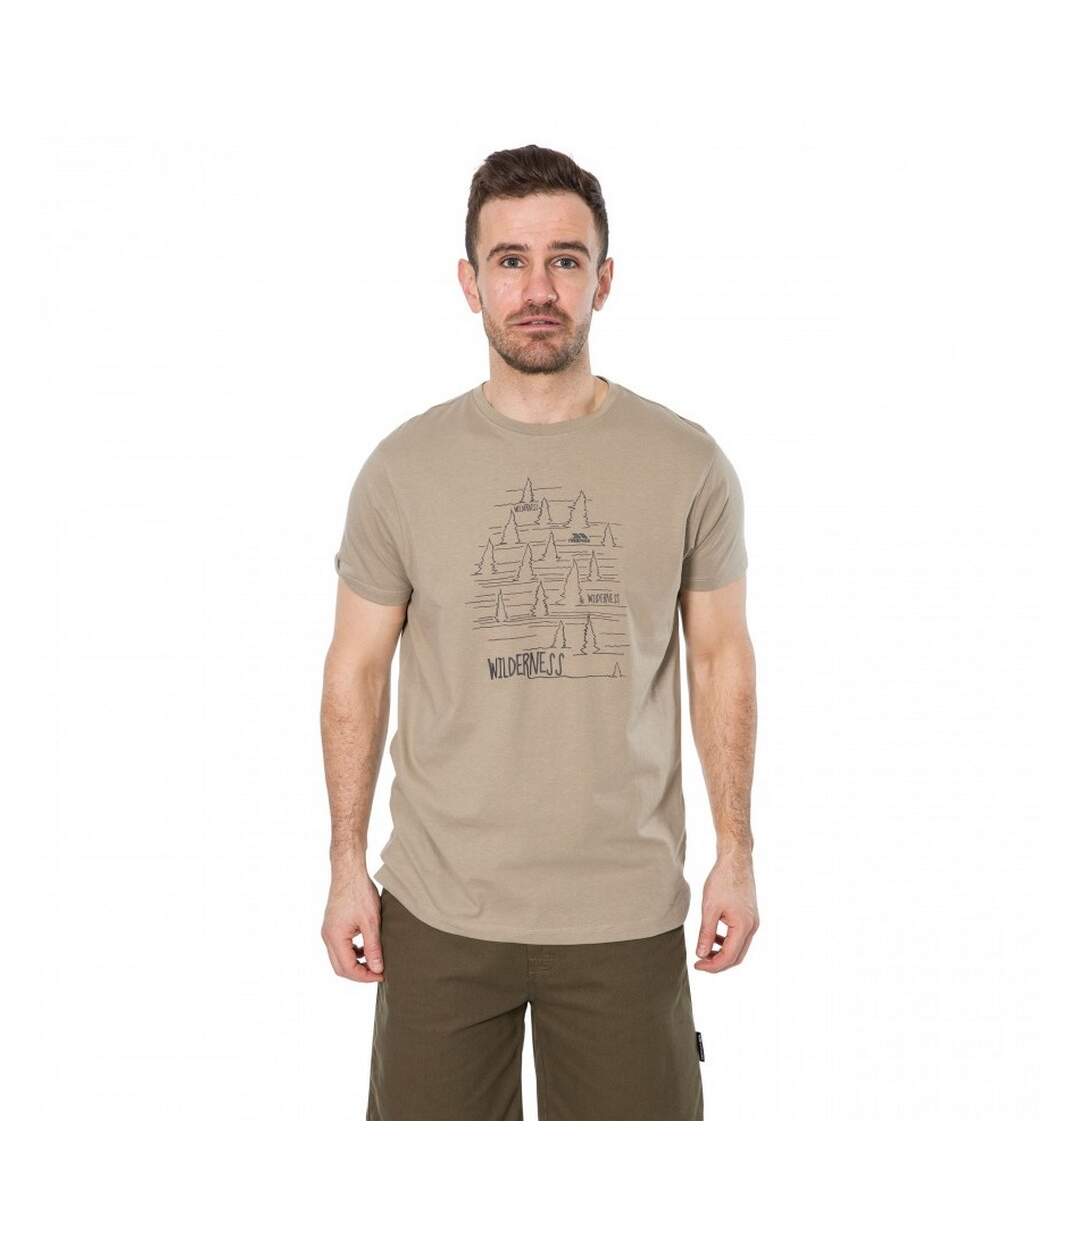 Trespass Mens Forest T-Shirt (Oatmeal) - UTTP4306